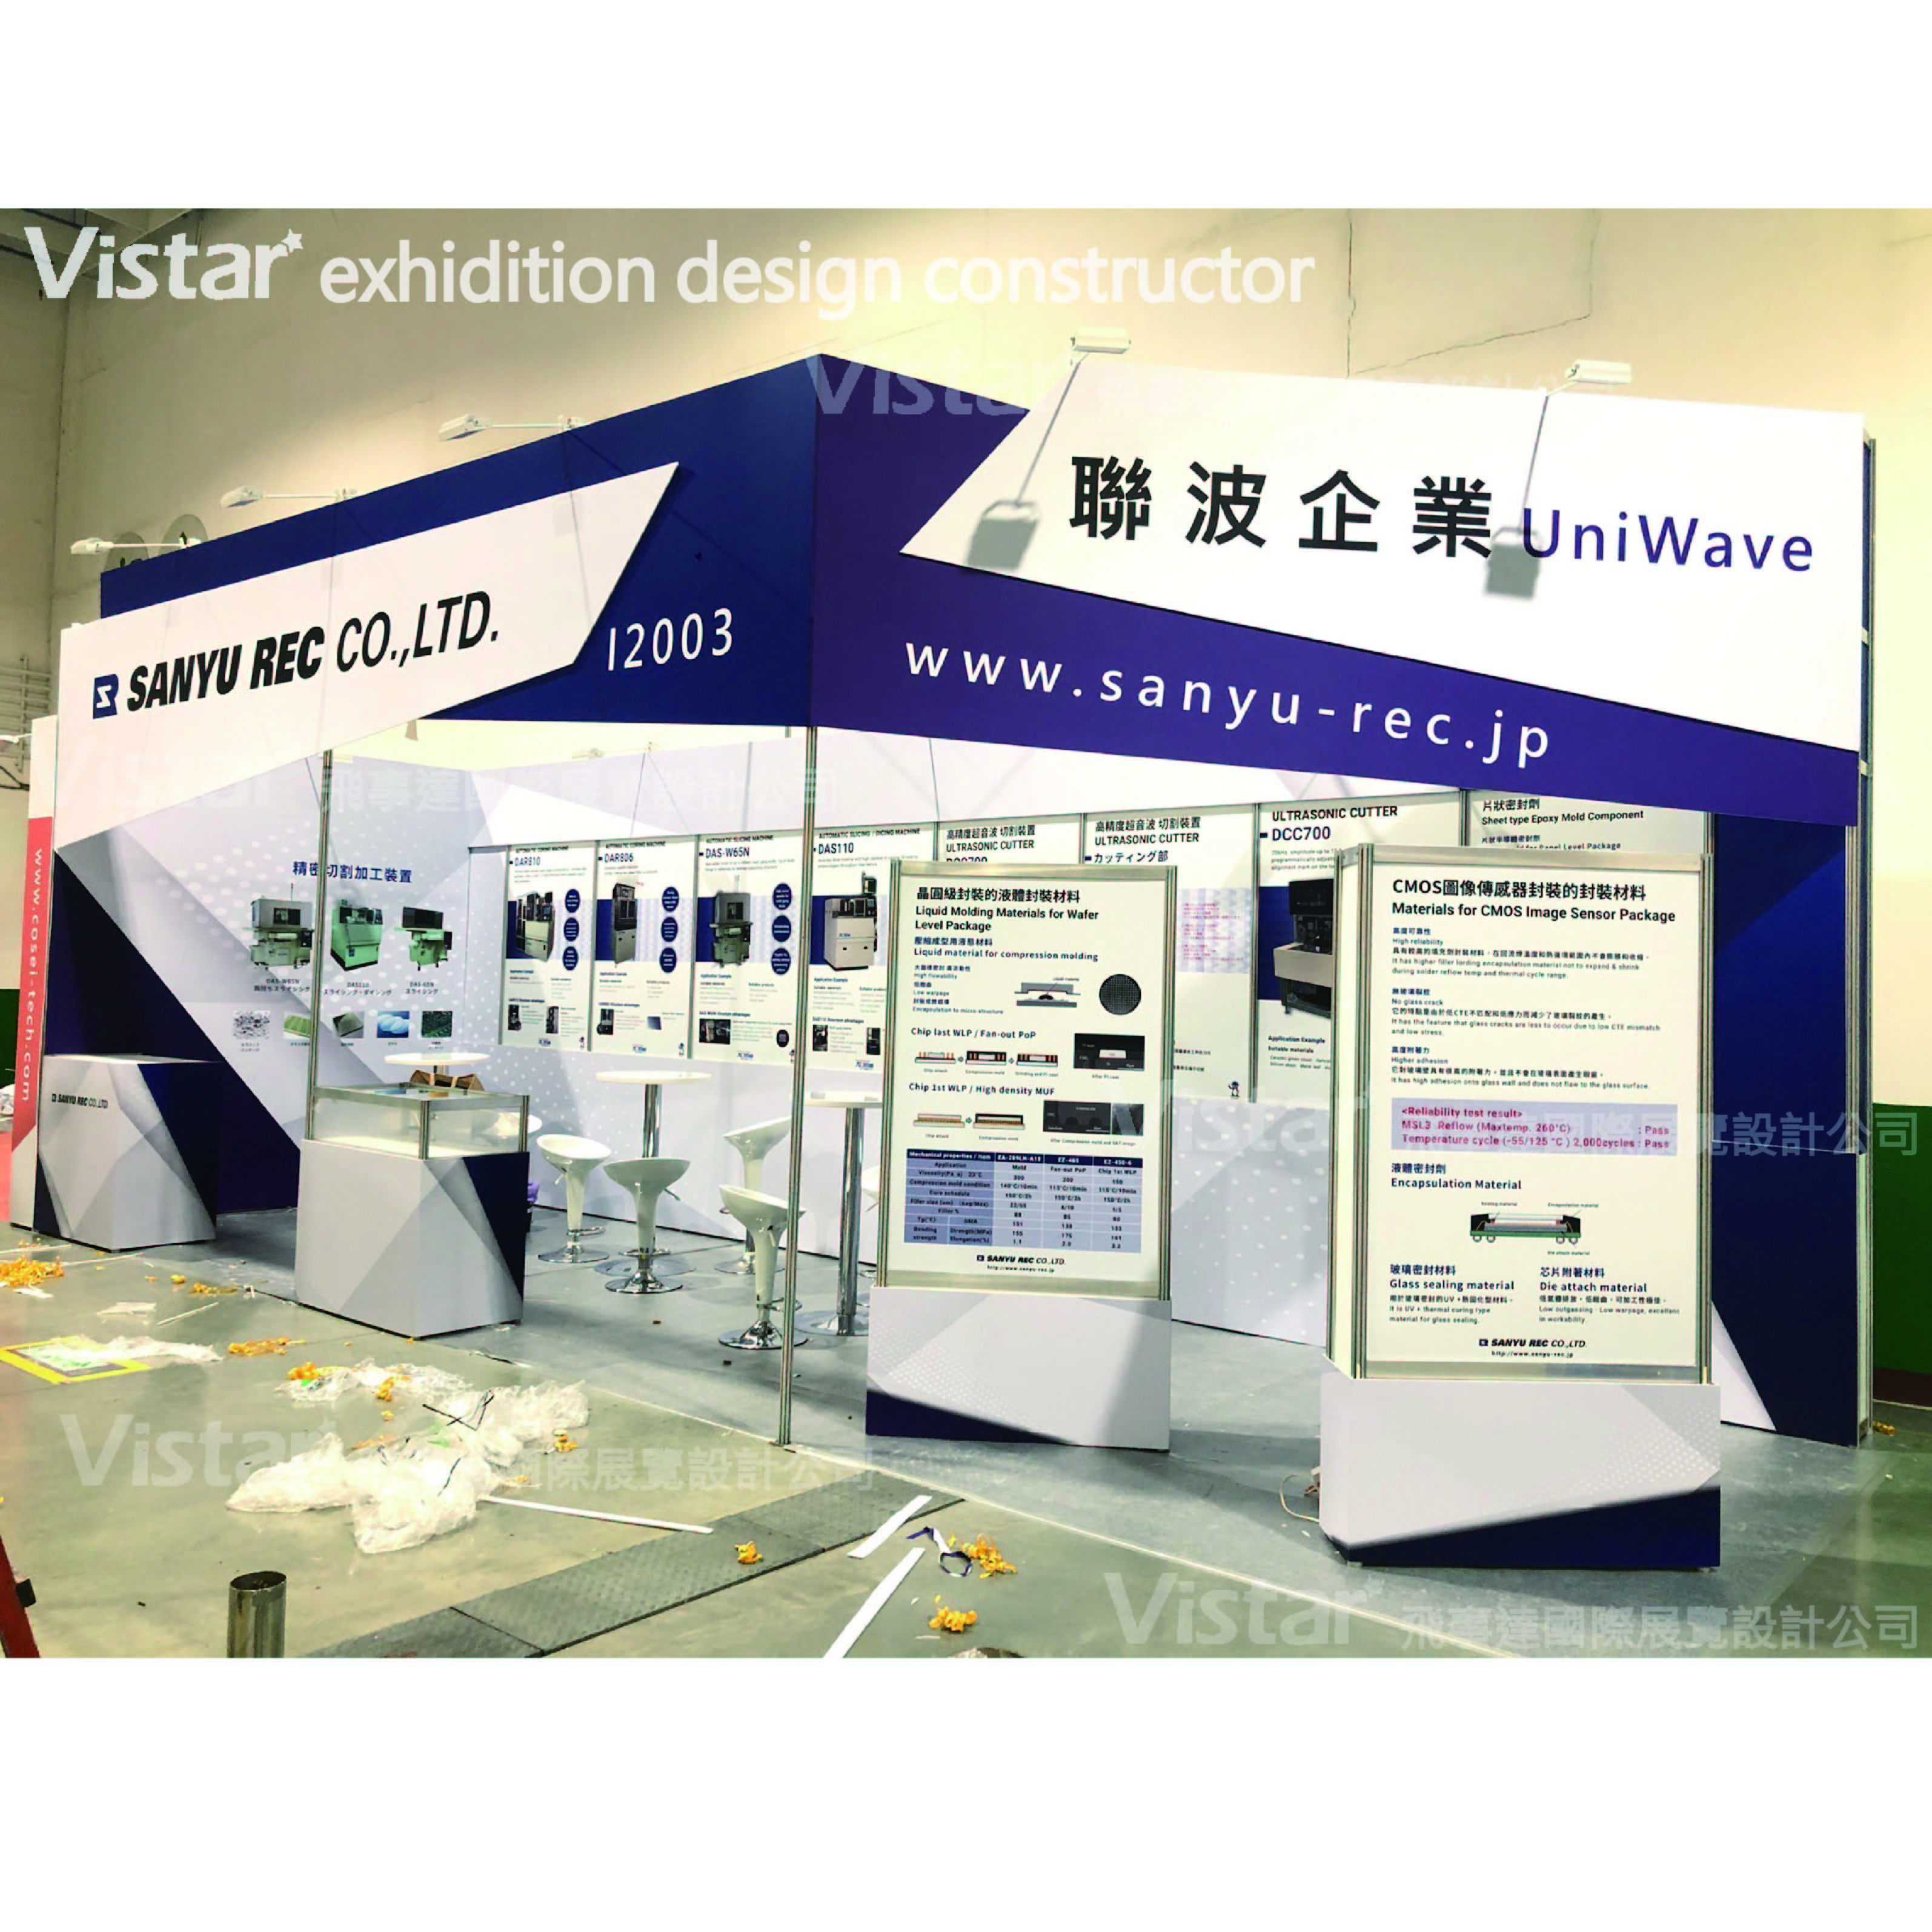 2022 國際半導體展 SEMICON Taiwan, 飛事達國際展覽設計有限公司, www.vistargp.com